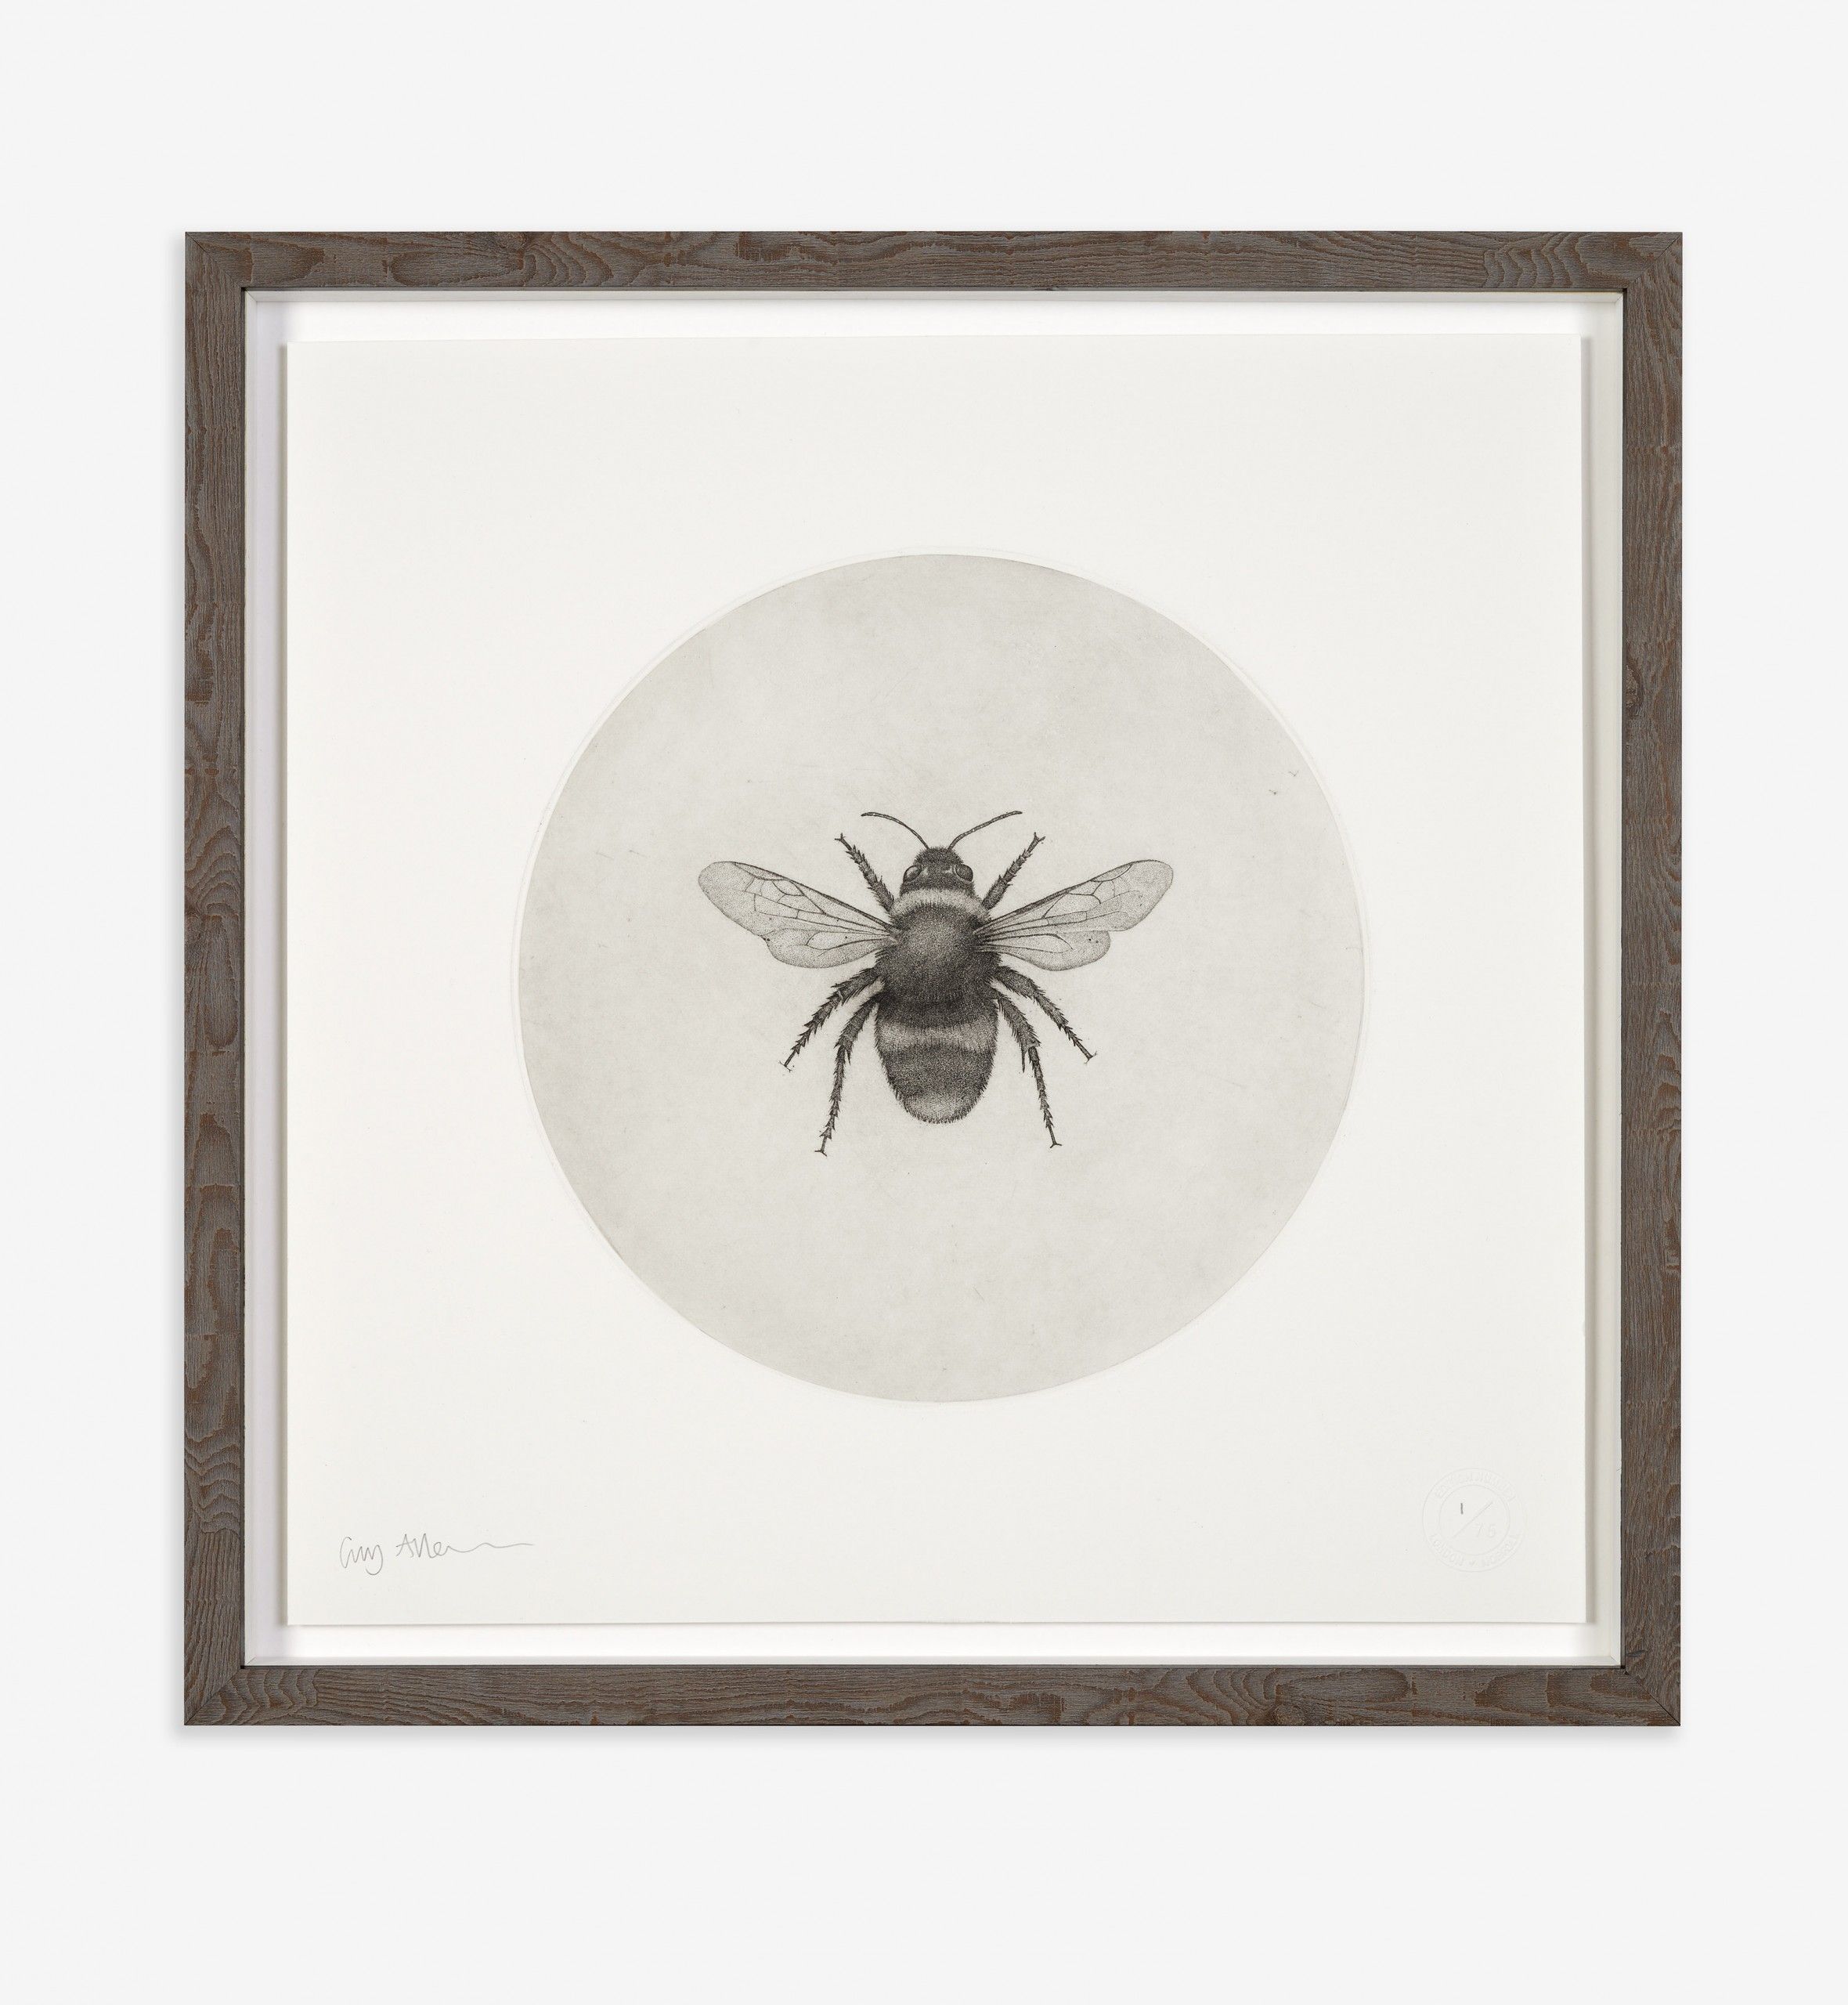 Bumblebee by Guy Allen